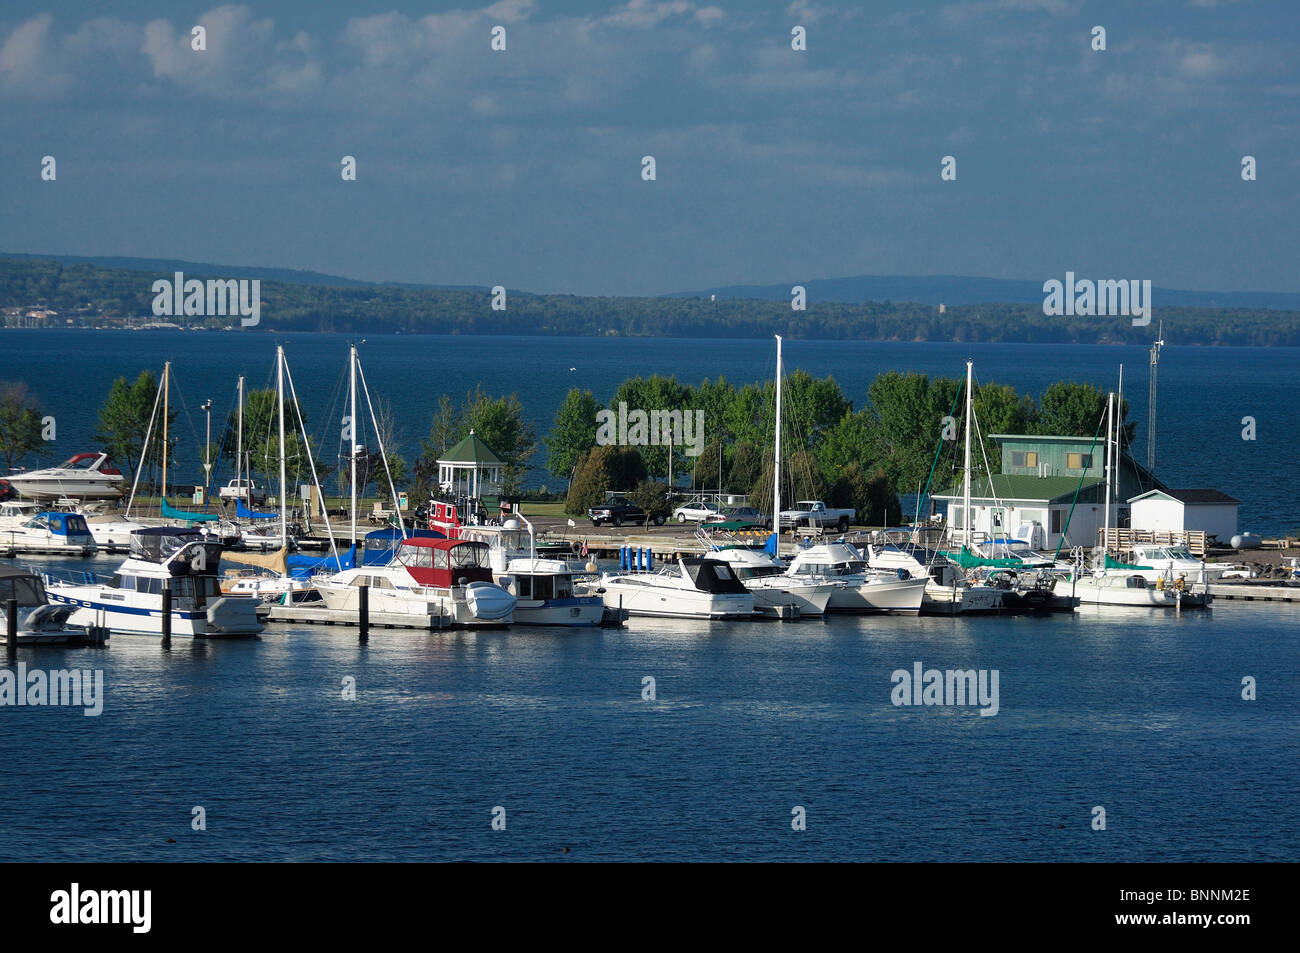 Hafen Hafen Lake Superior Ashland Wisconsin USA Vereinigte Staaten von Amerika Boote See Stockfoto